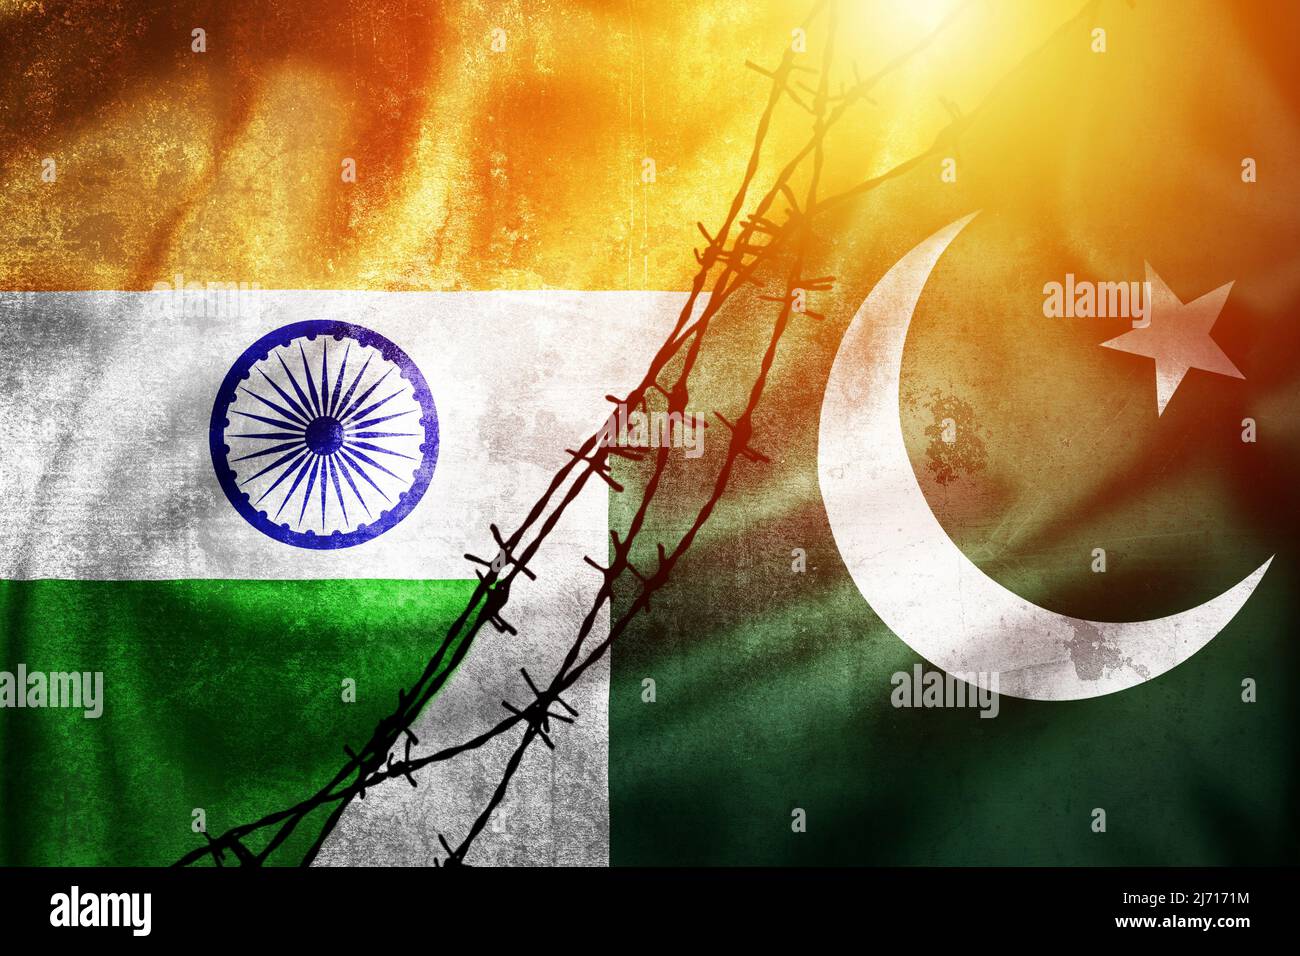 Grunge drapeaux de l'Inde et du Pakistan divisé par barb fil soleil hante illustration, concept de relations tendues entre l'Inde et le Pakistan Banque D'Images